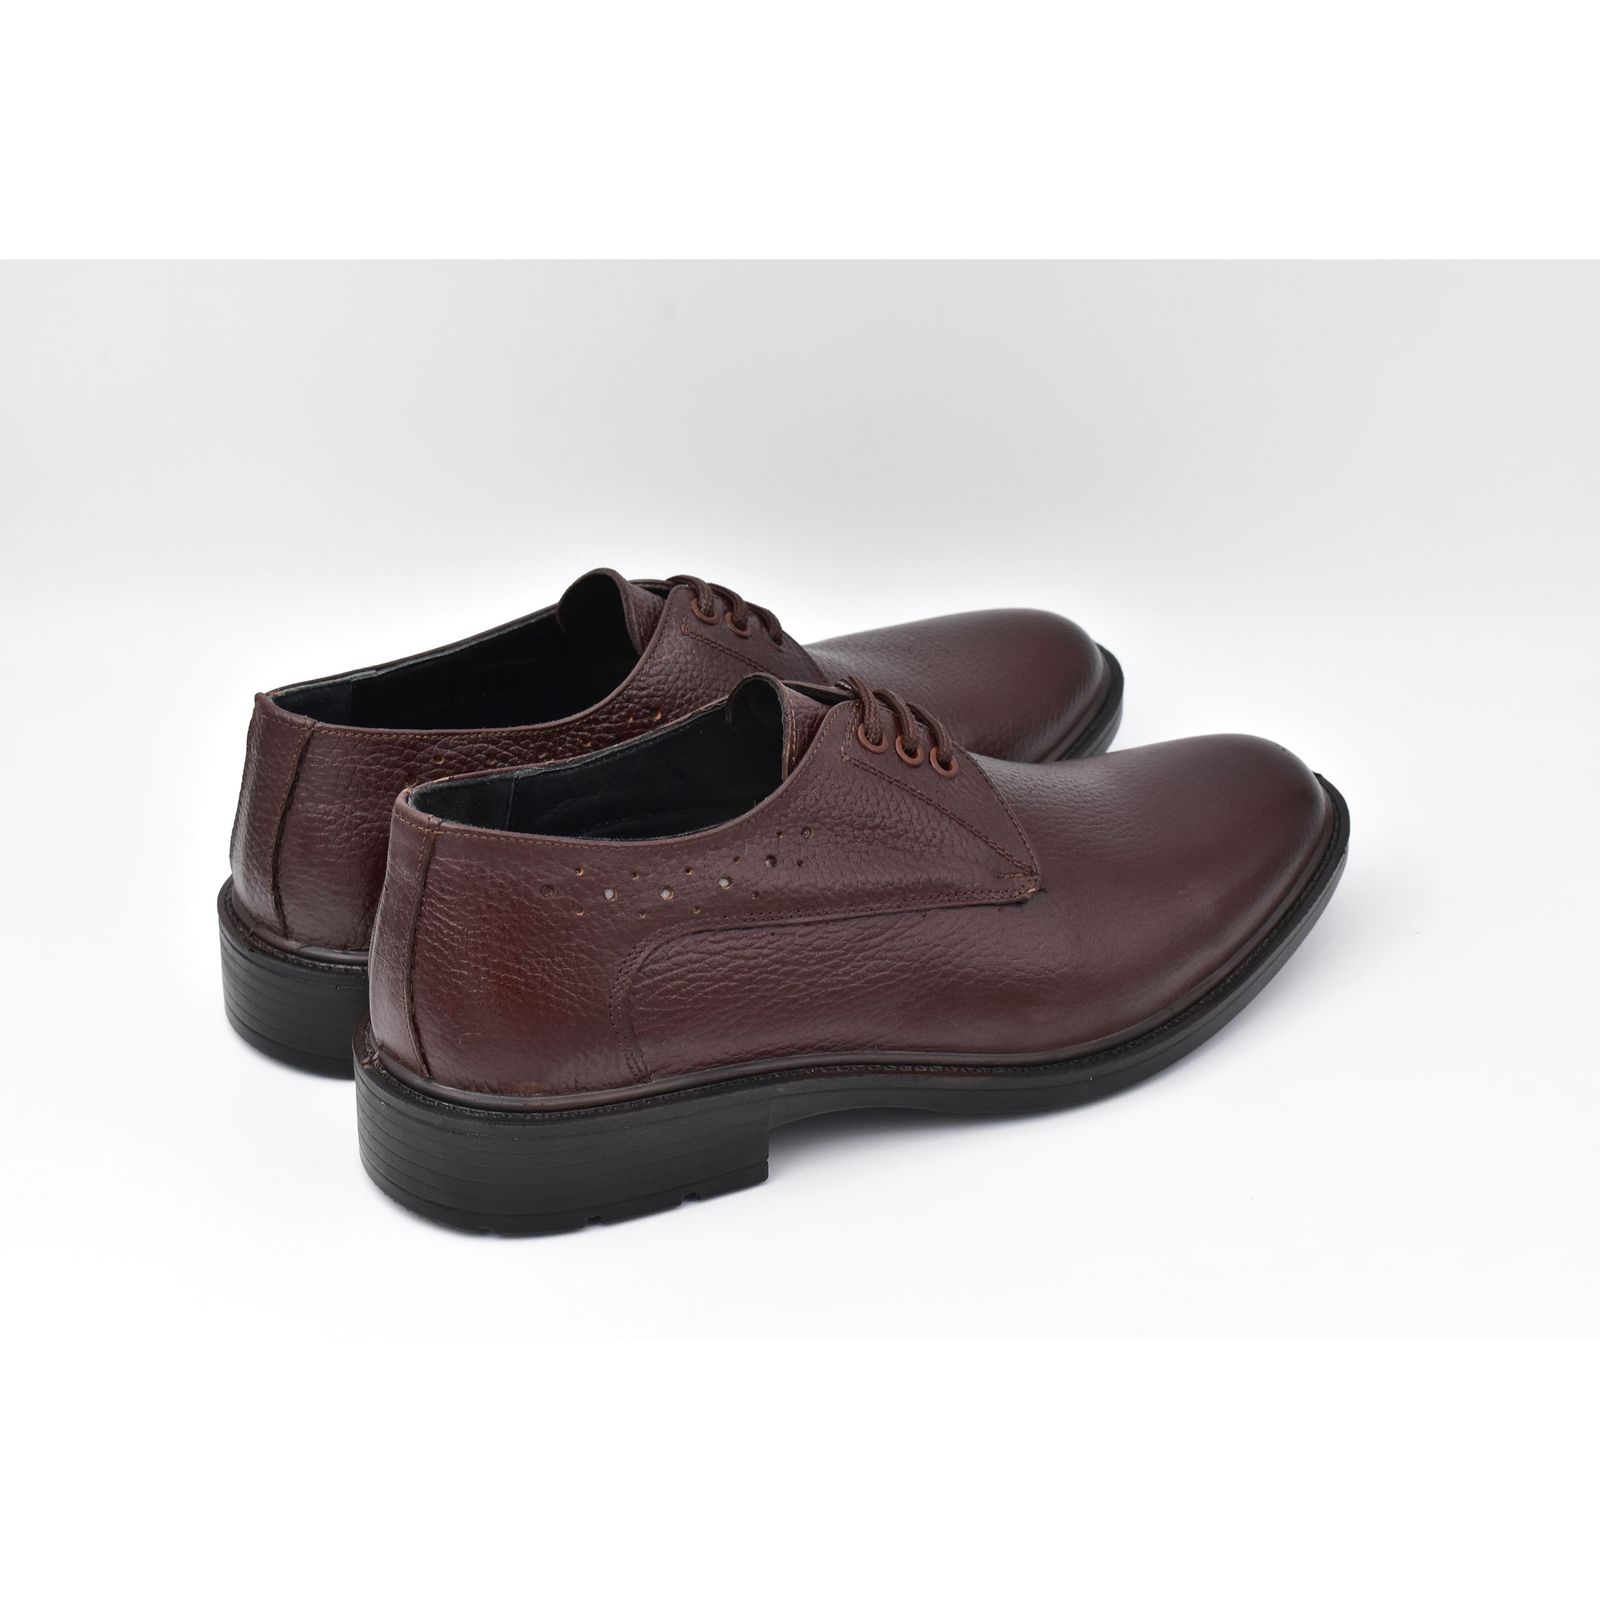 کفش مردانه پاما مدل Malavan کد G1179 -  - 6